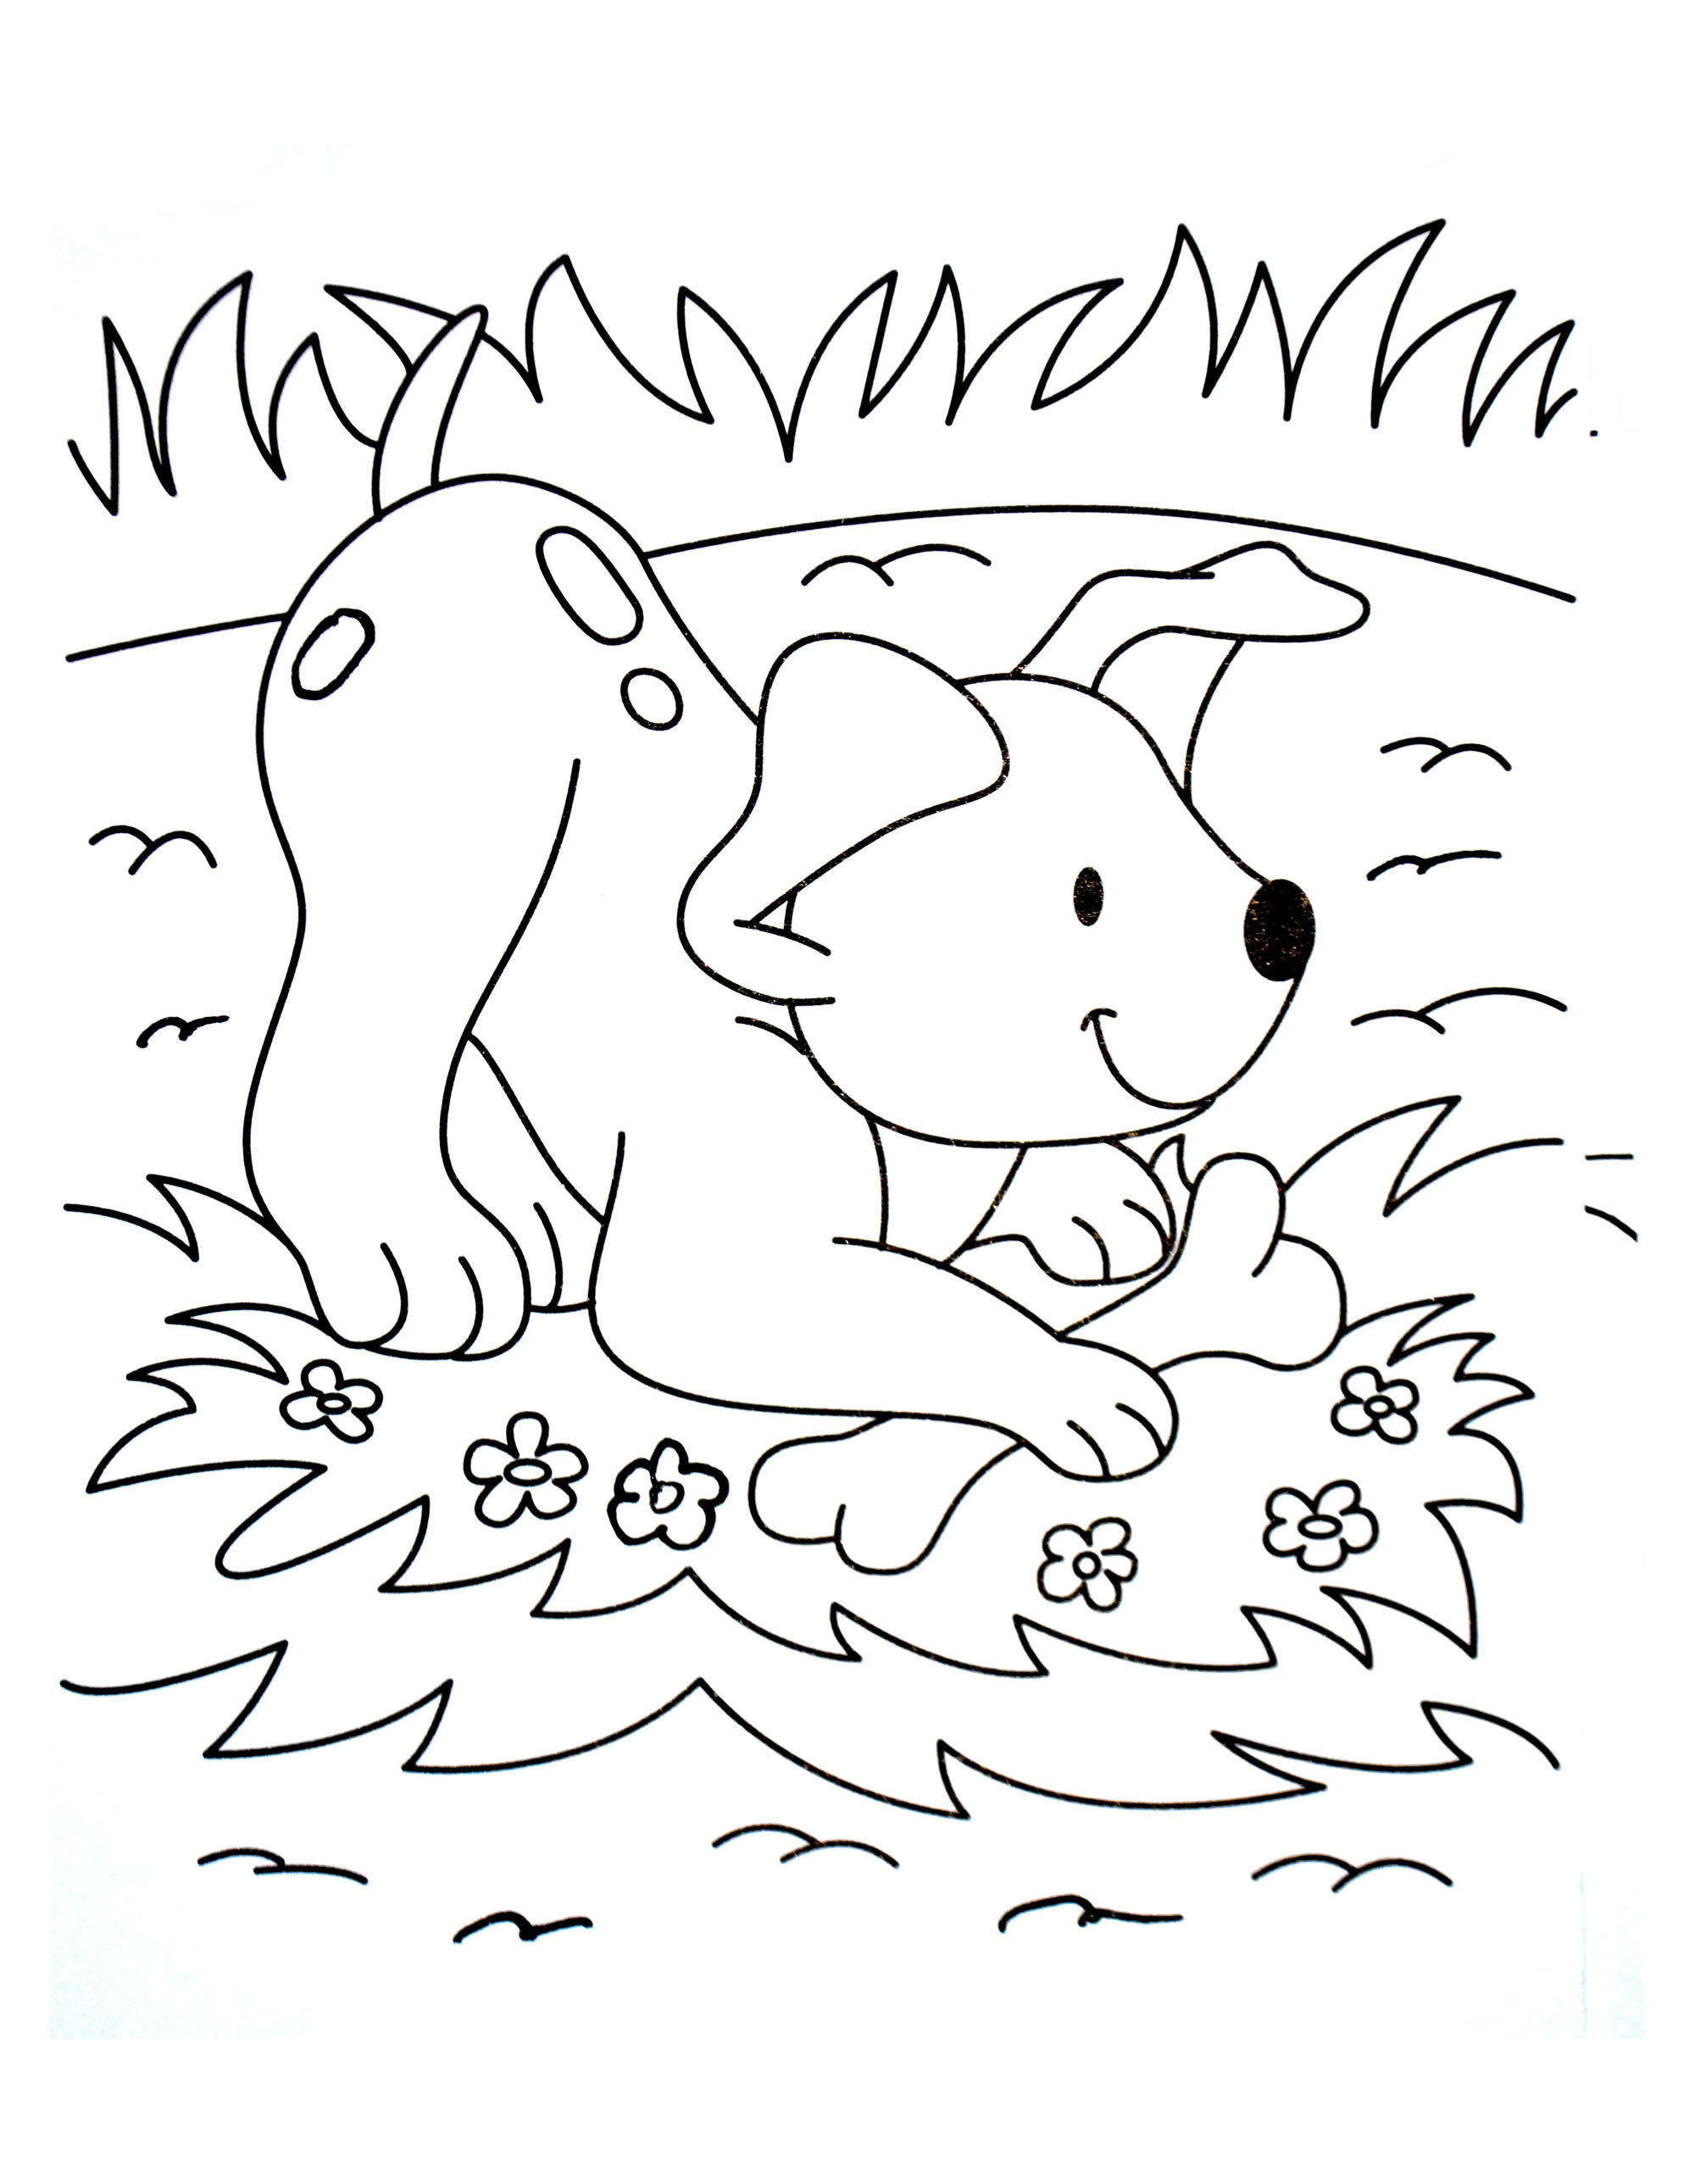 Dibujo de perro para descargar y colorear - Perros - Just Color Niños :  Dibujos para colorear para niños